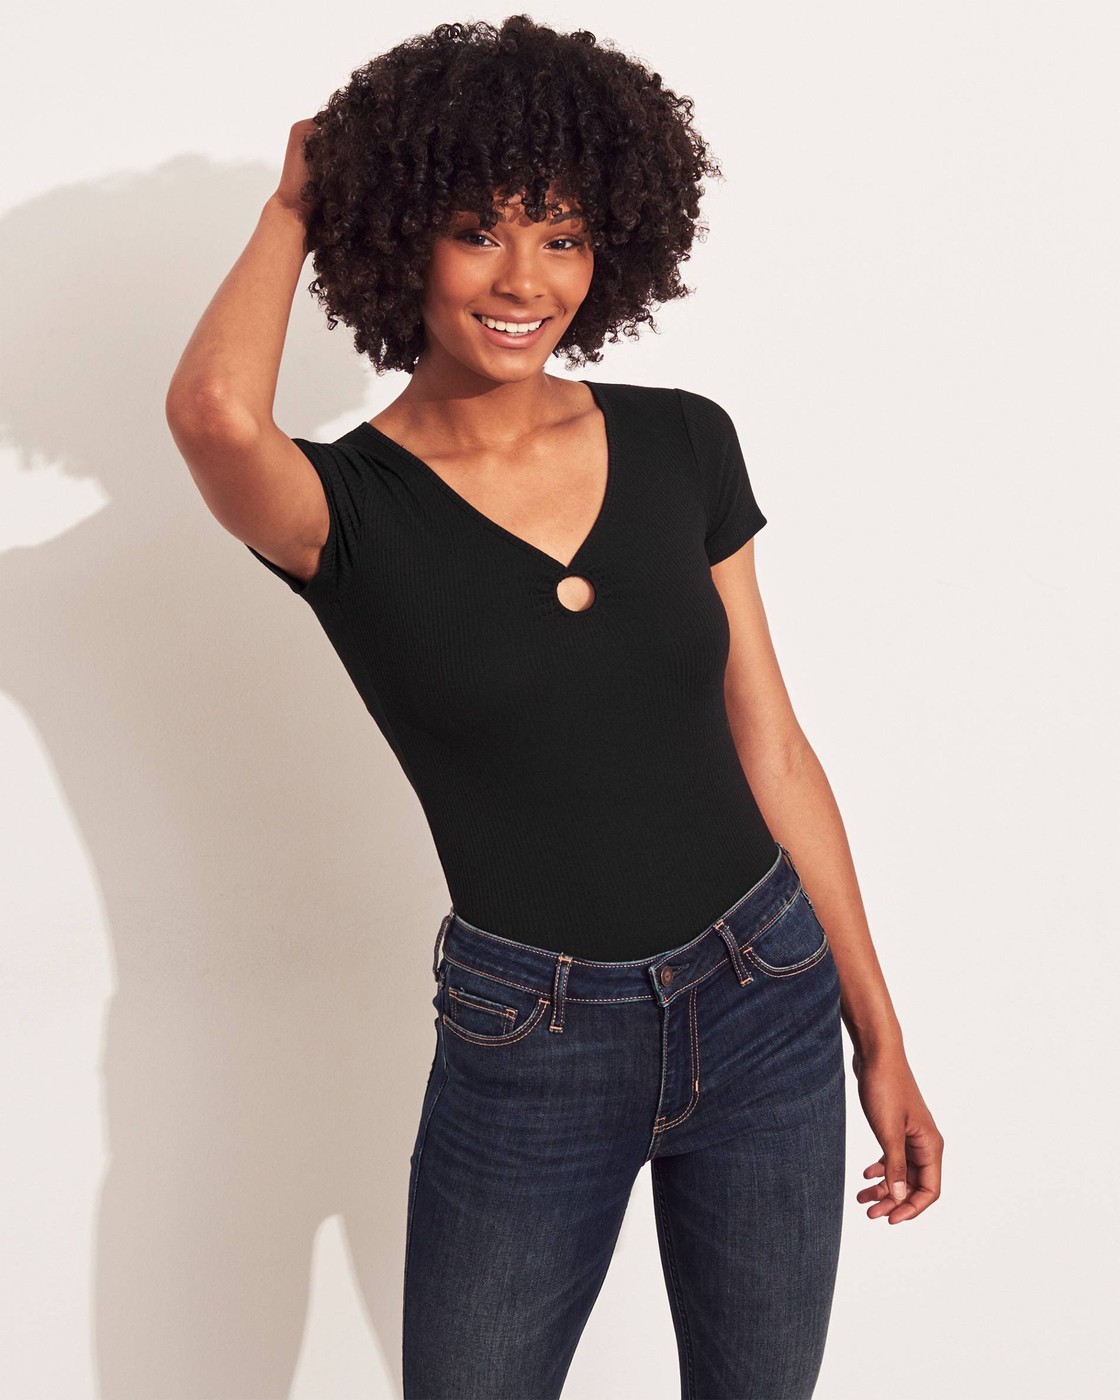 Черная футболка - женская футболка Hollister